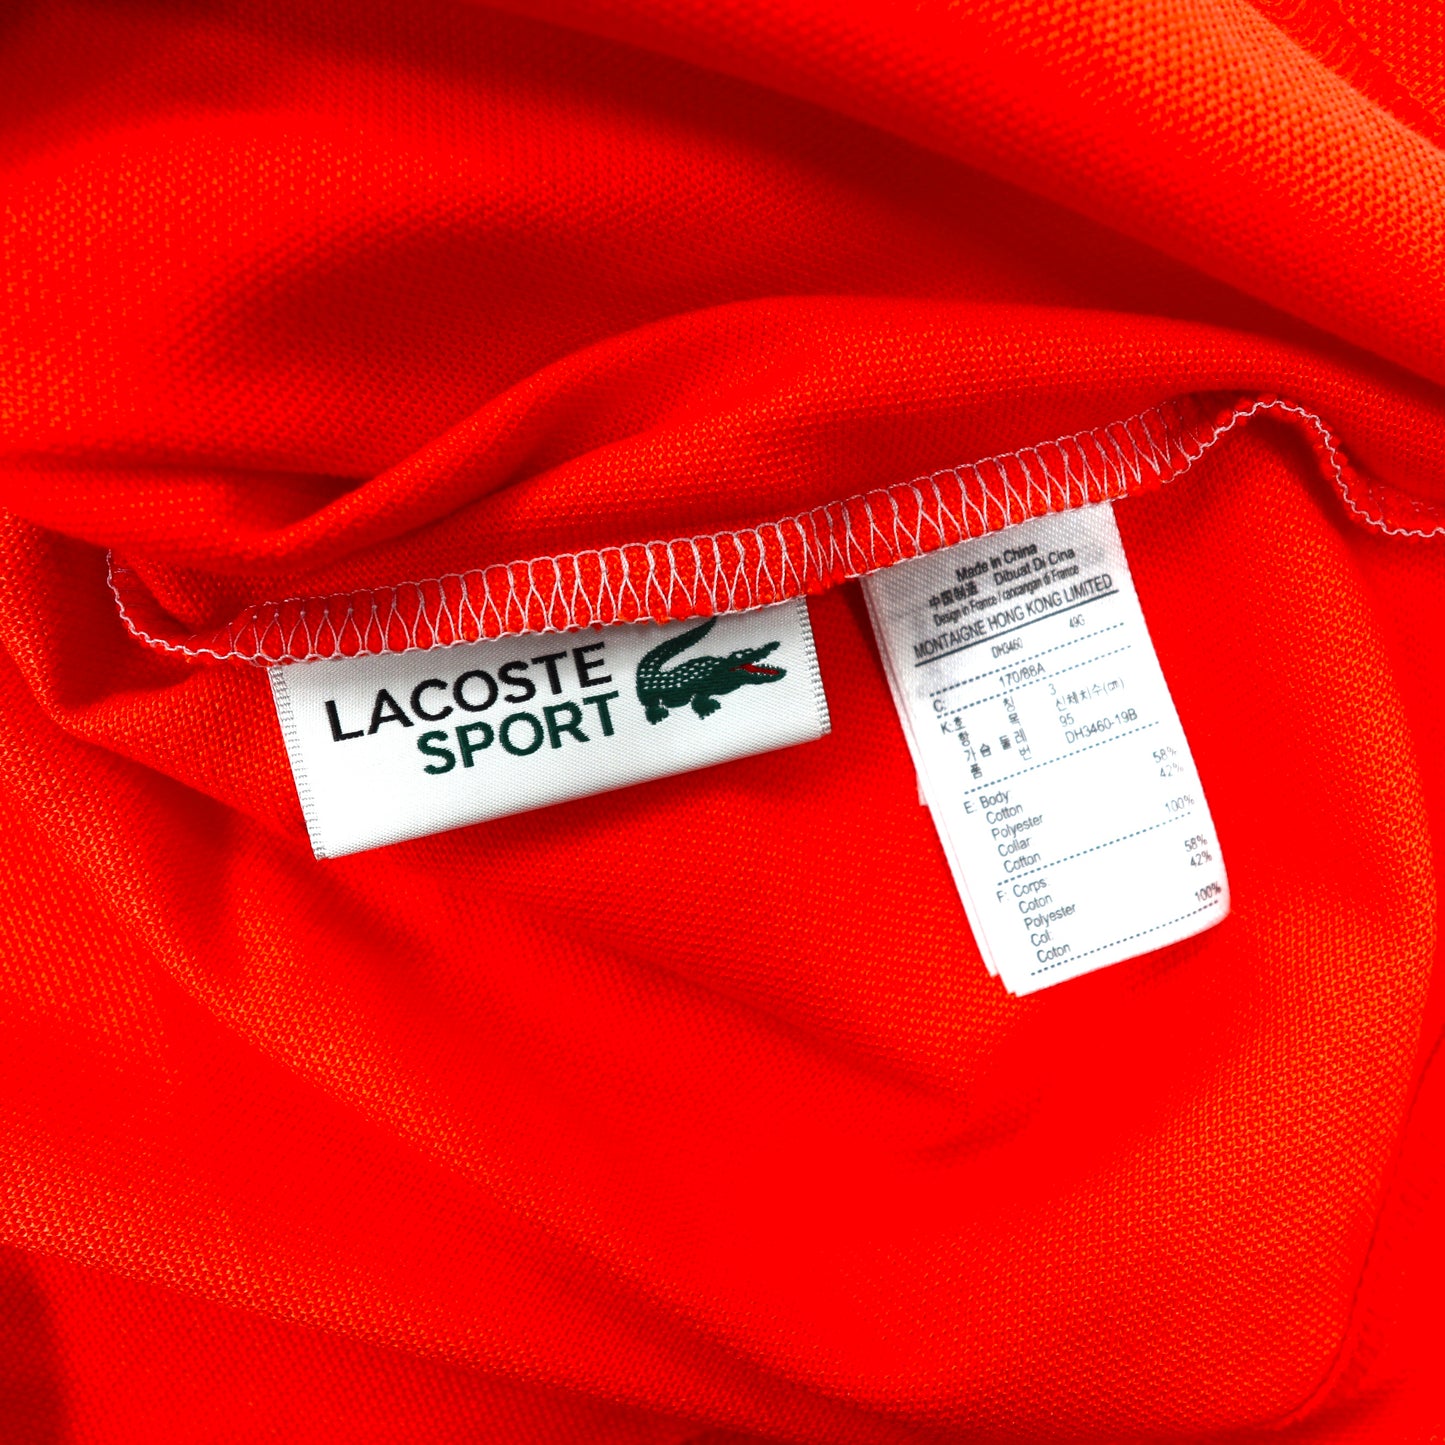 LACOSTE ハーフジップポロシャツ 3 オレンジ DH3460L 未使用品